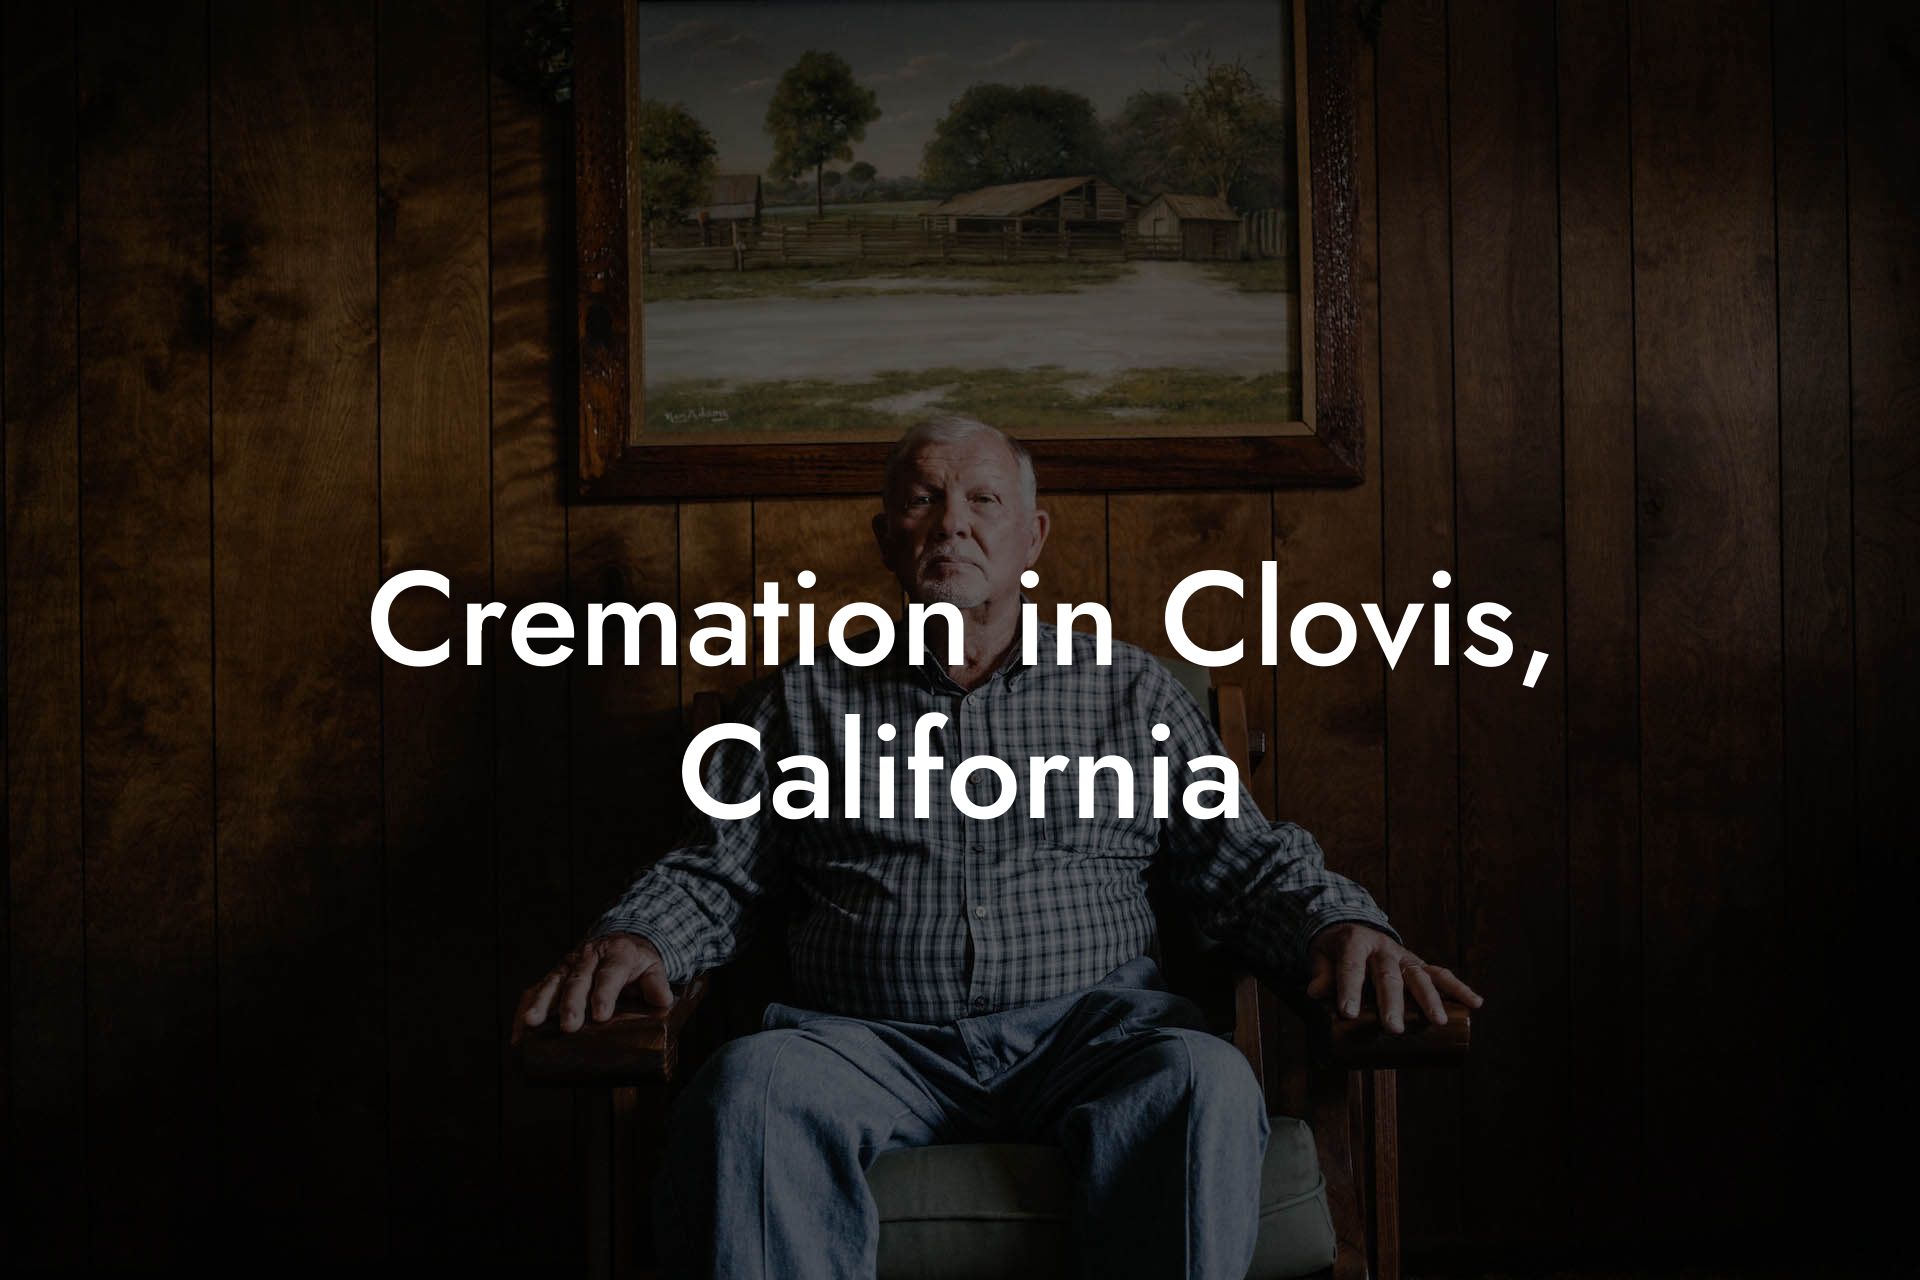 Cremation in Clovis, California